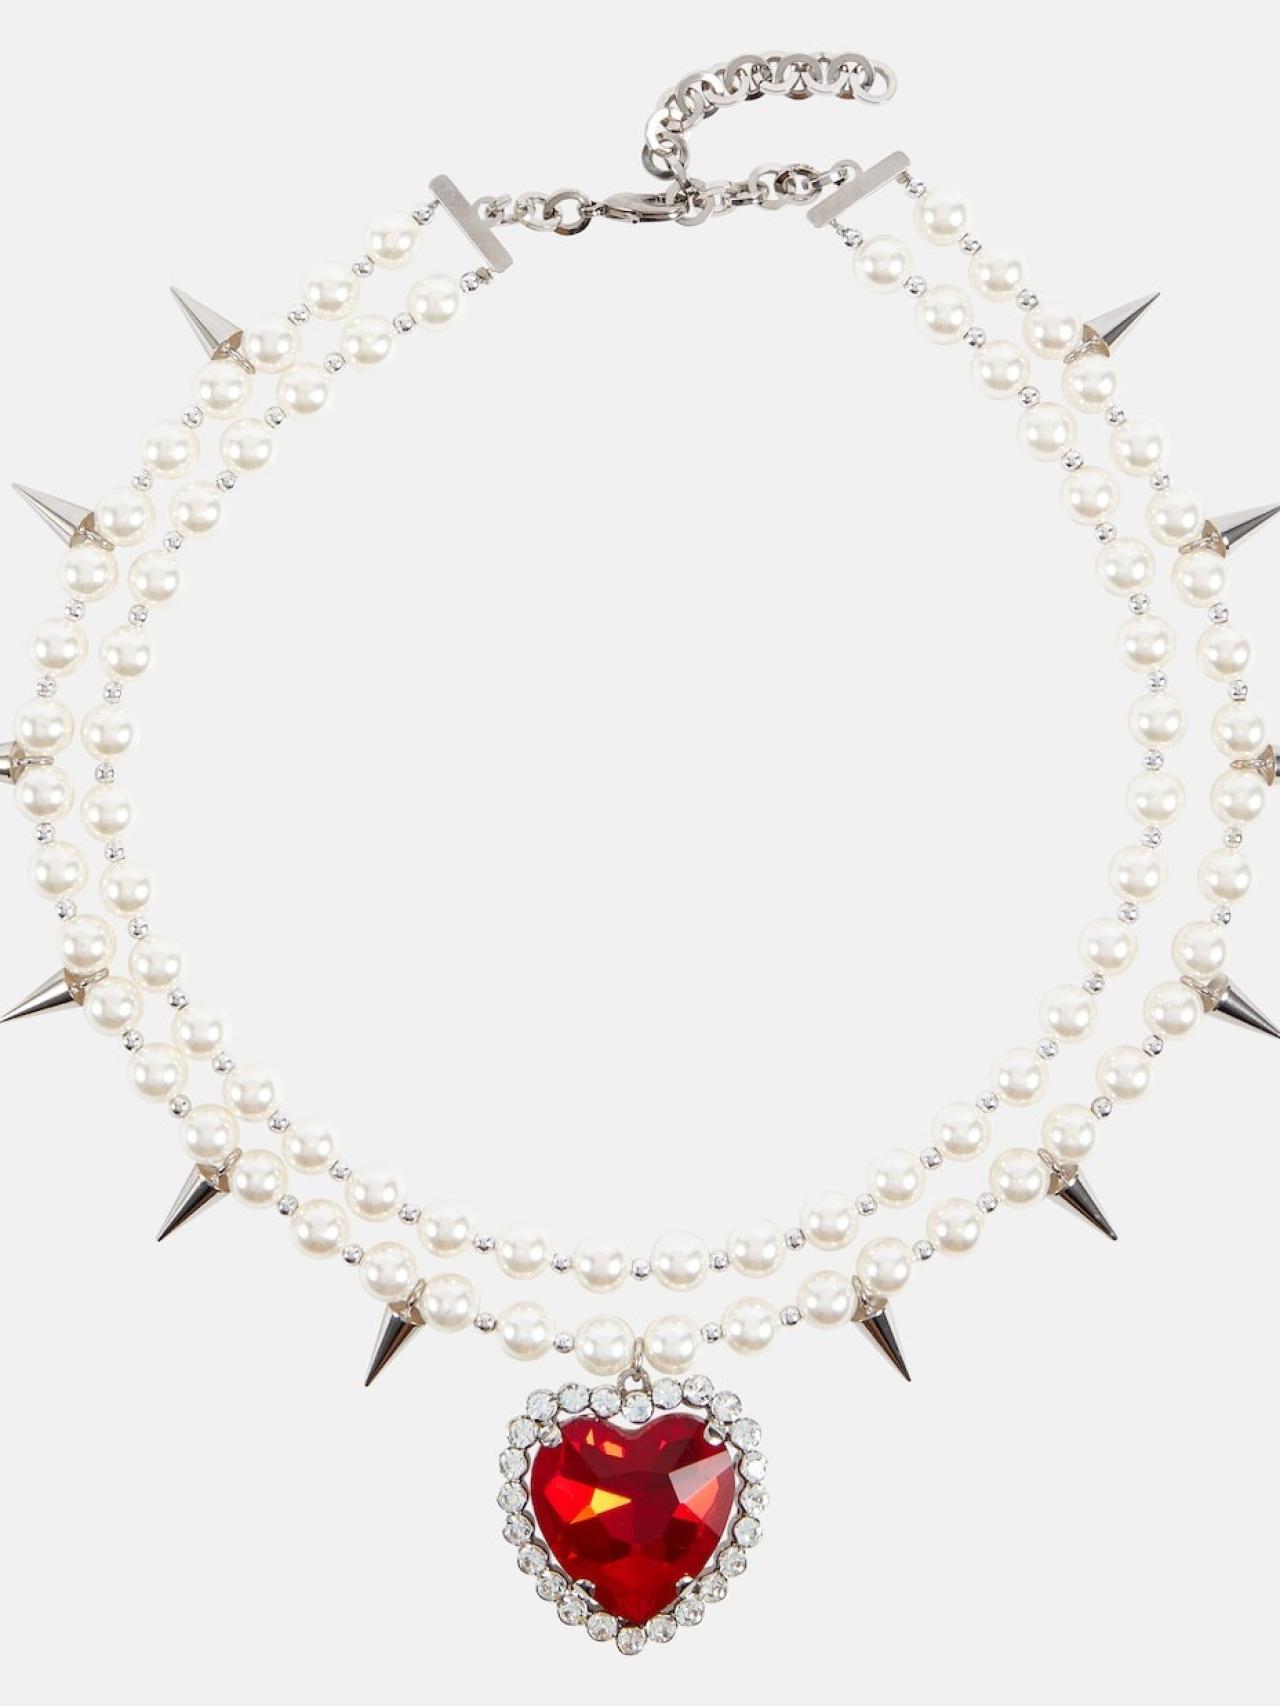 El impresionante collar de perlas y corazón rojo que luce Nuria Roca es ...